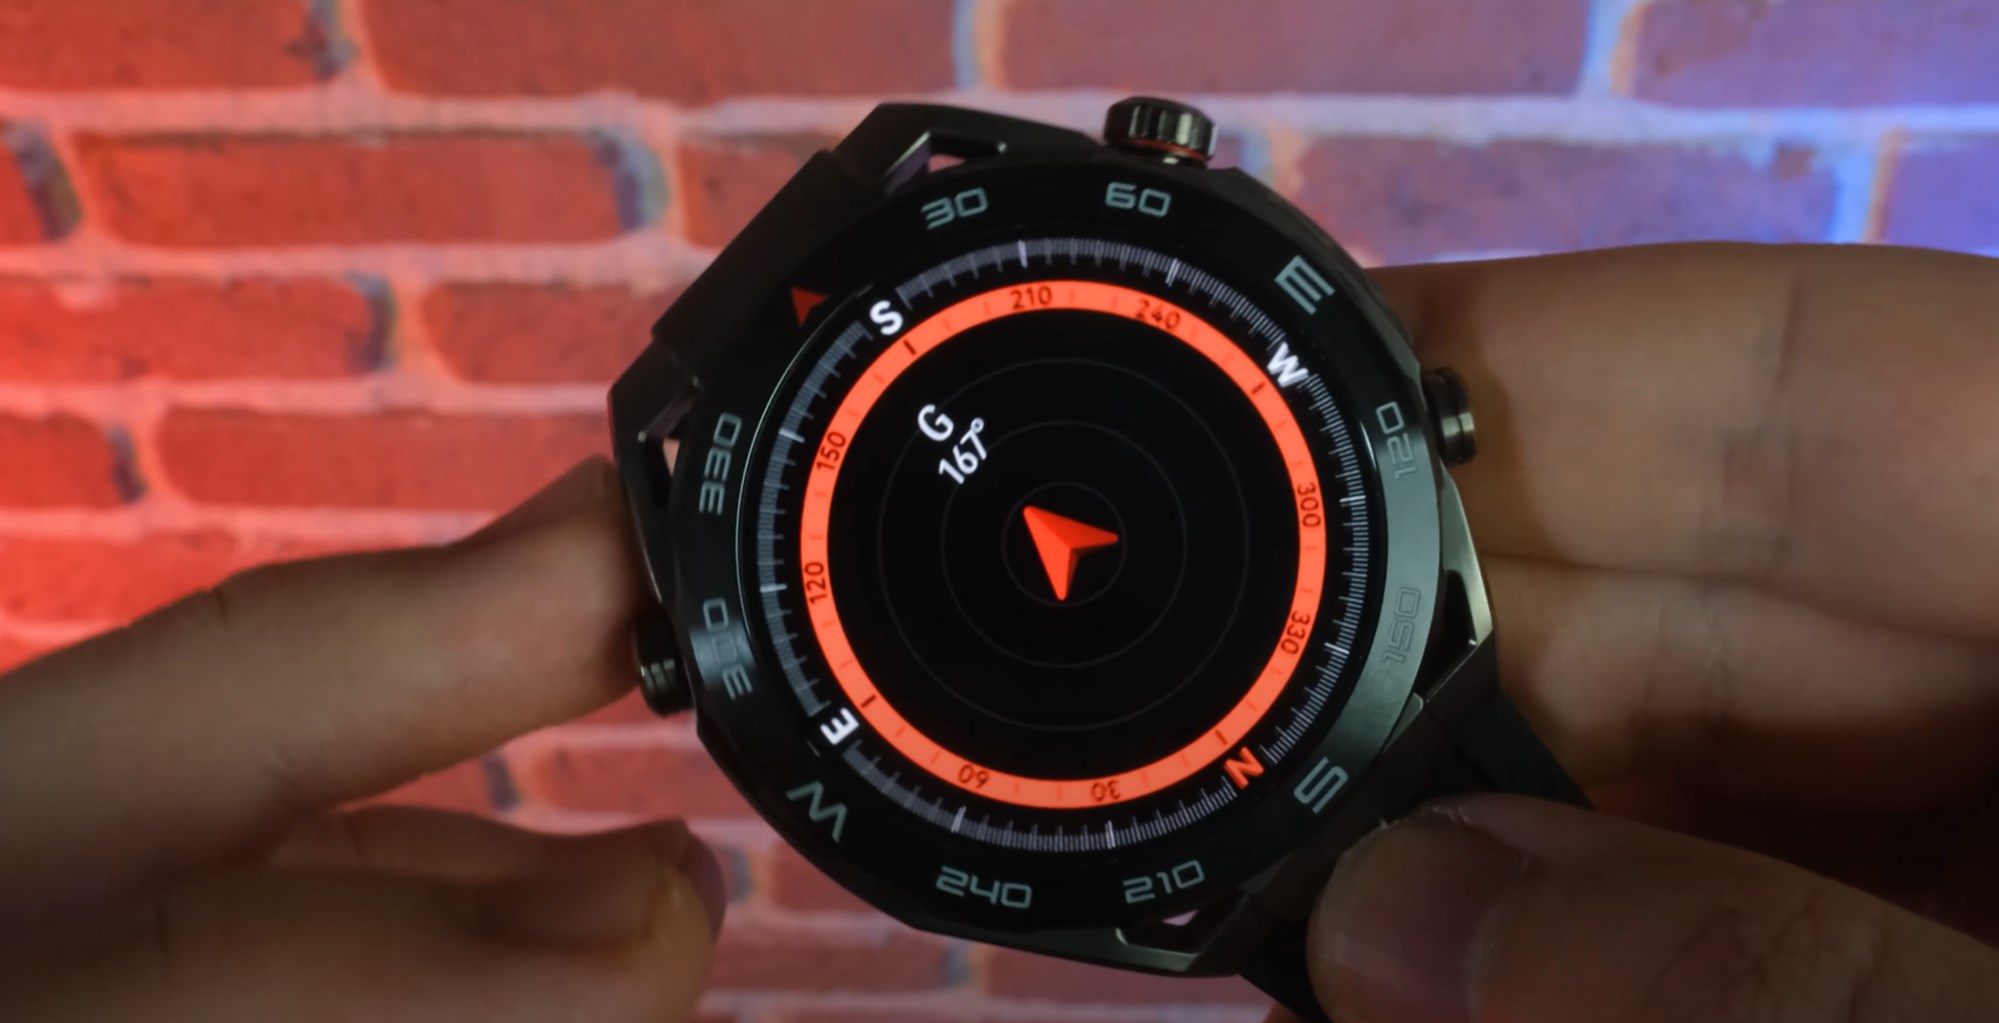 Bu akıllı saat bir başka! Huawei Watch Ultimate incelemesi